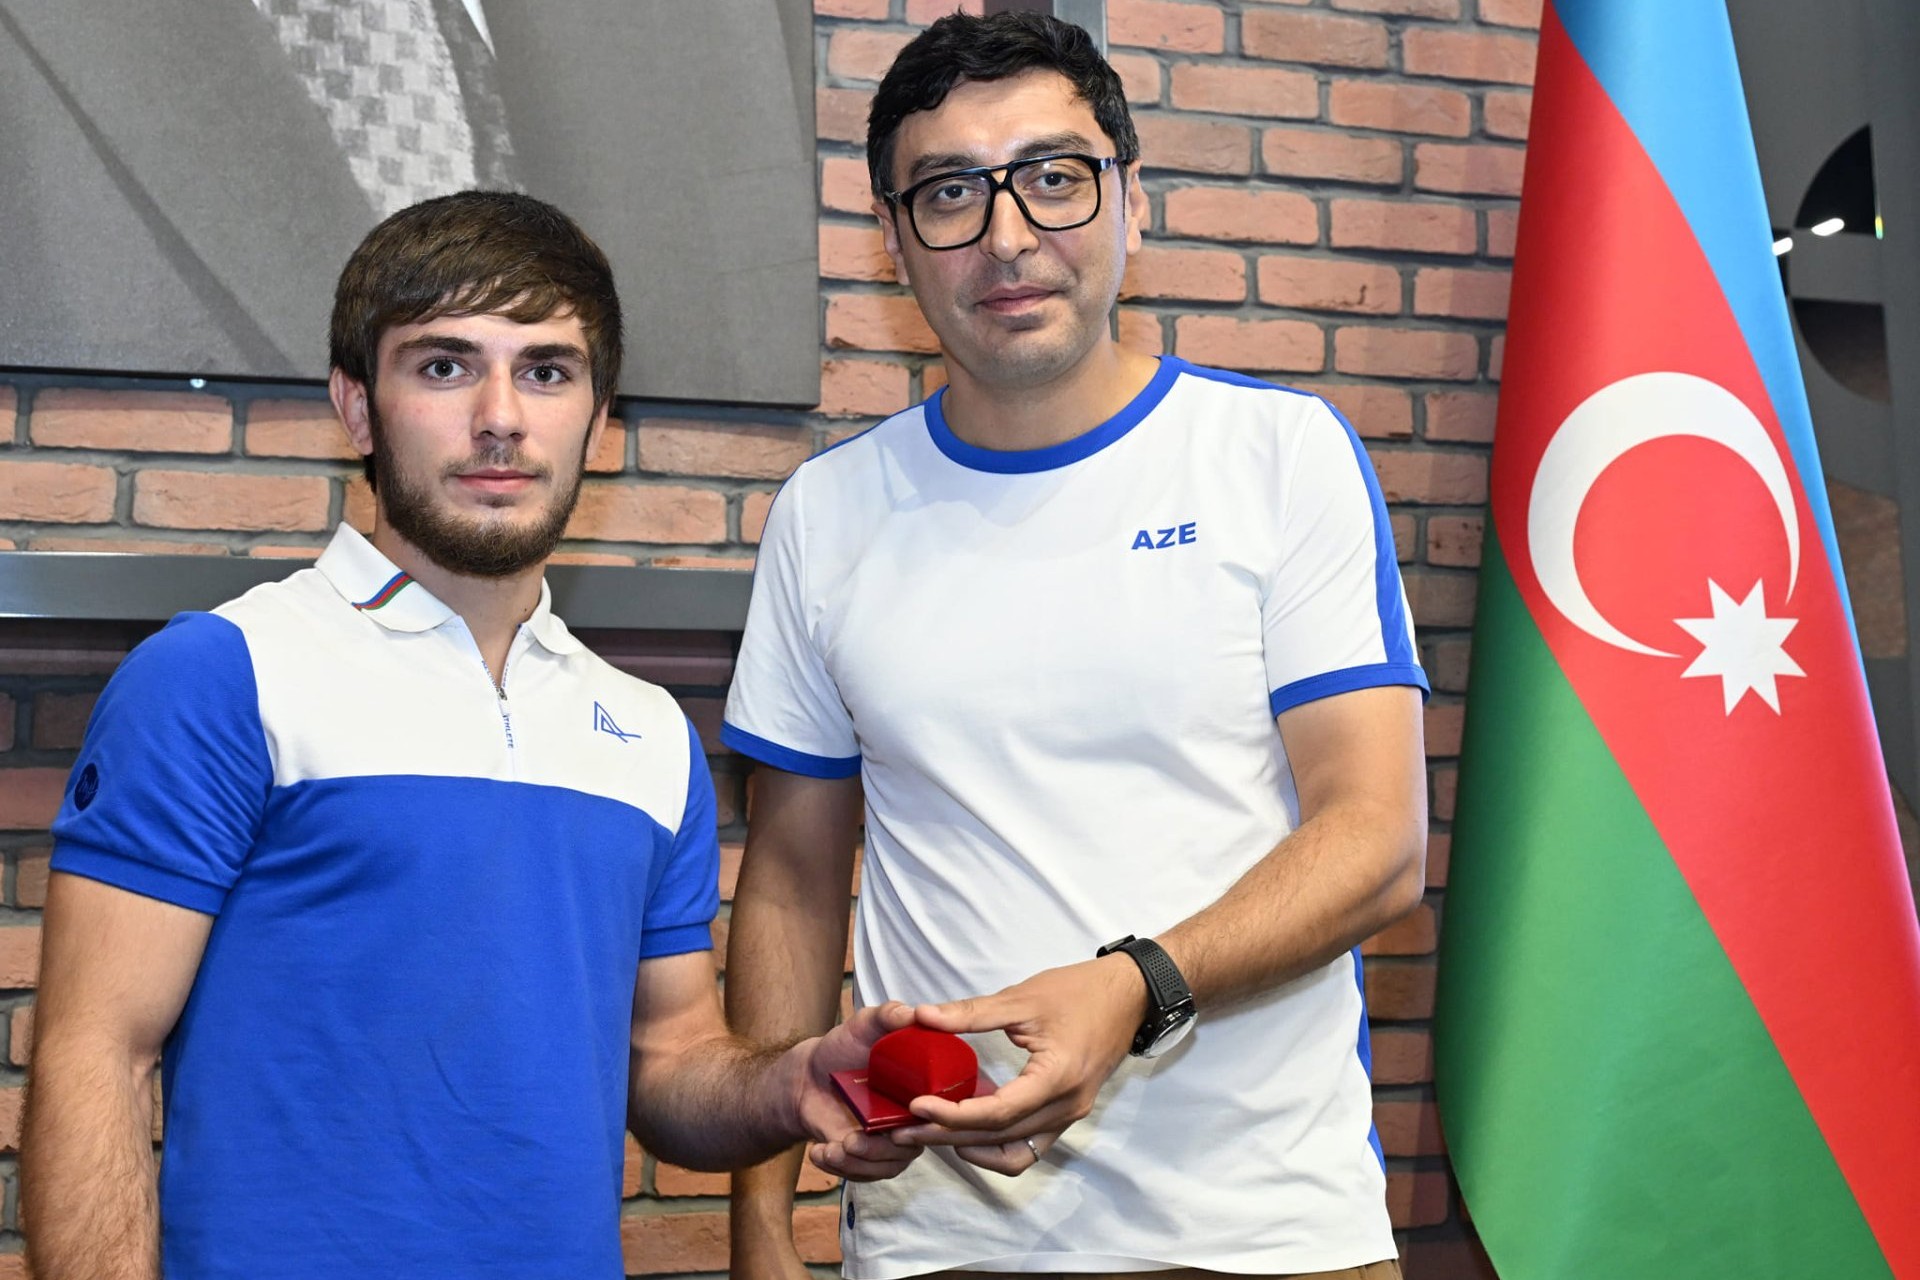 Фарид Гаибов встретился с успешно представлявшими Азербайджан спортсменами и их тренерами - ФОТО